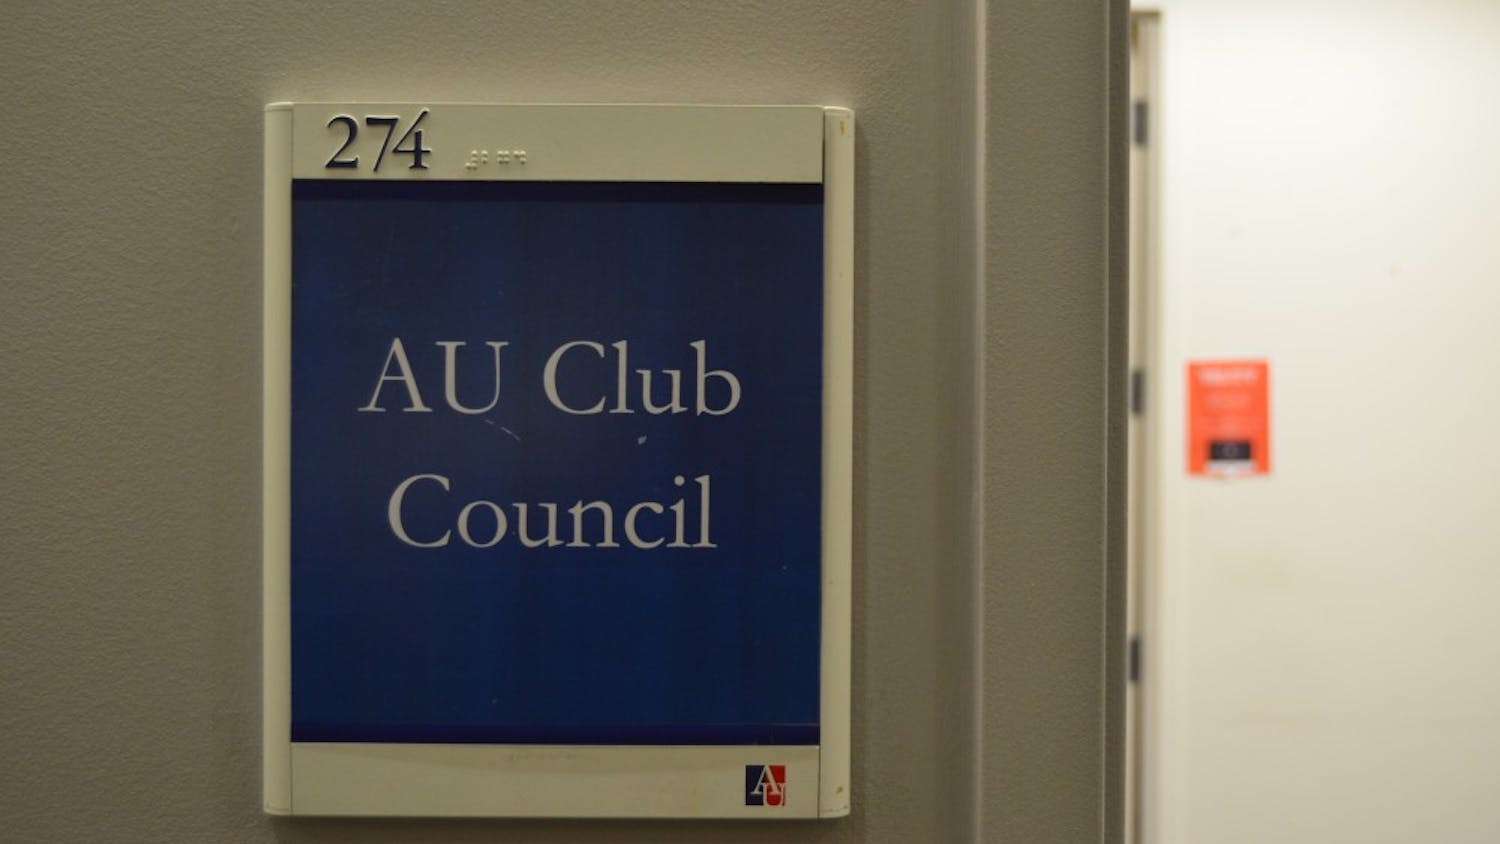 AUCC (Club Council)